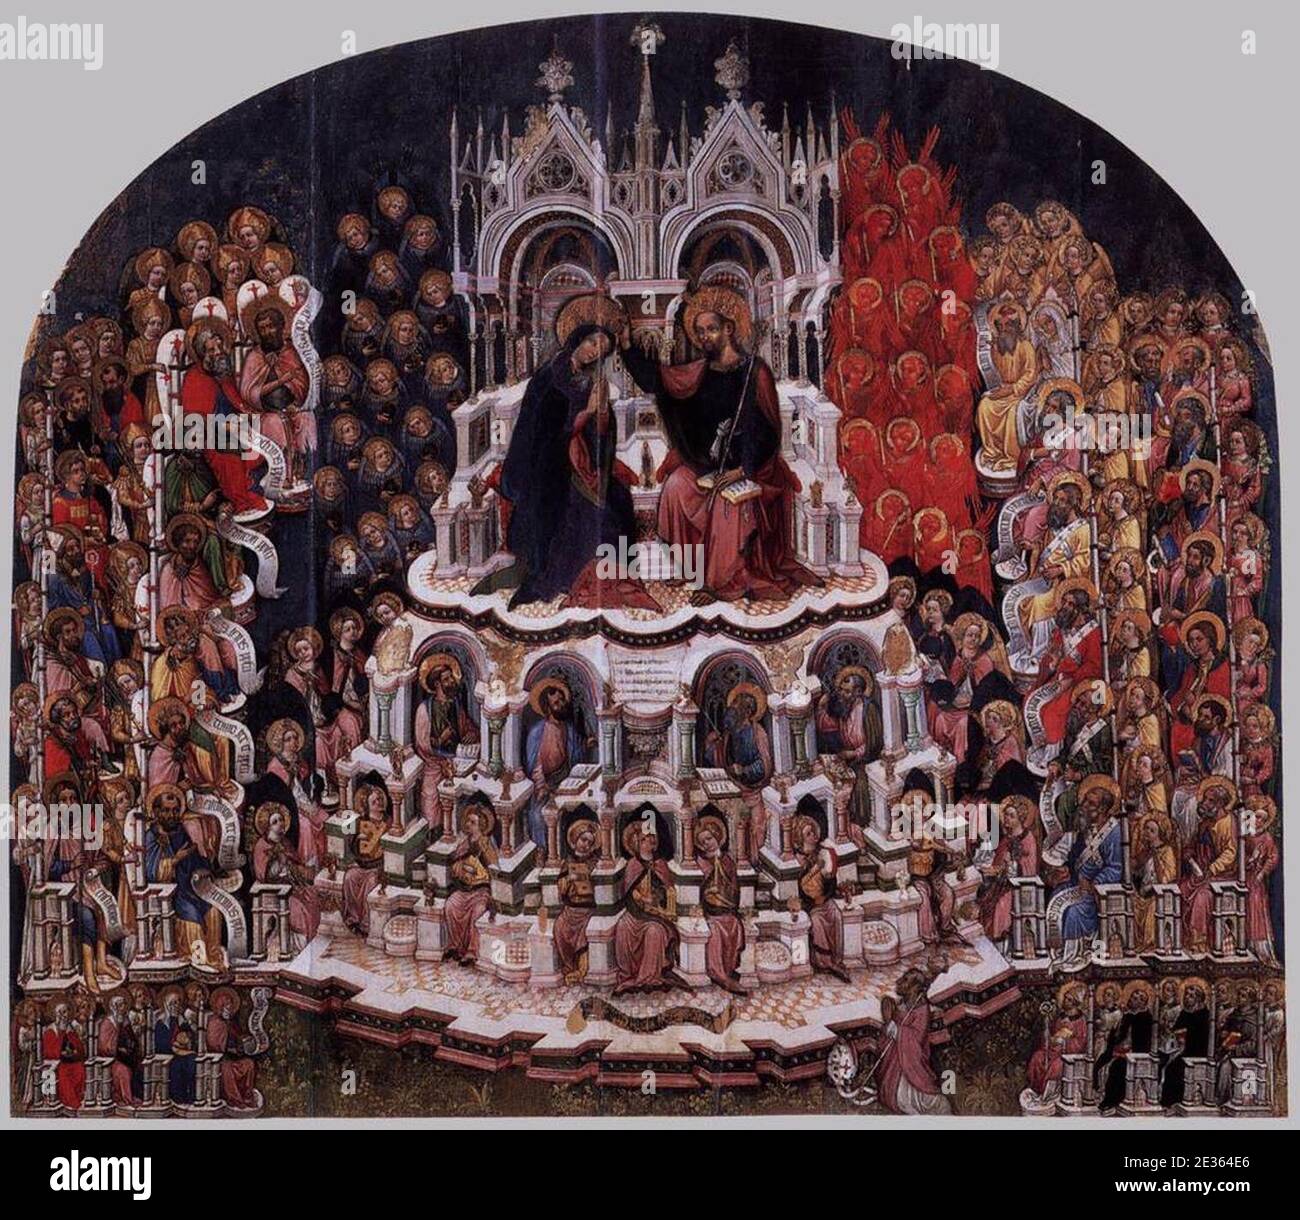 Maestro di Ceneda - Coronation of the Virgin in Paradise and Donators - Gallerie dell'Accademia Venice. Stock Photo